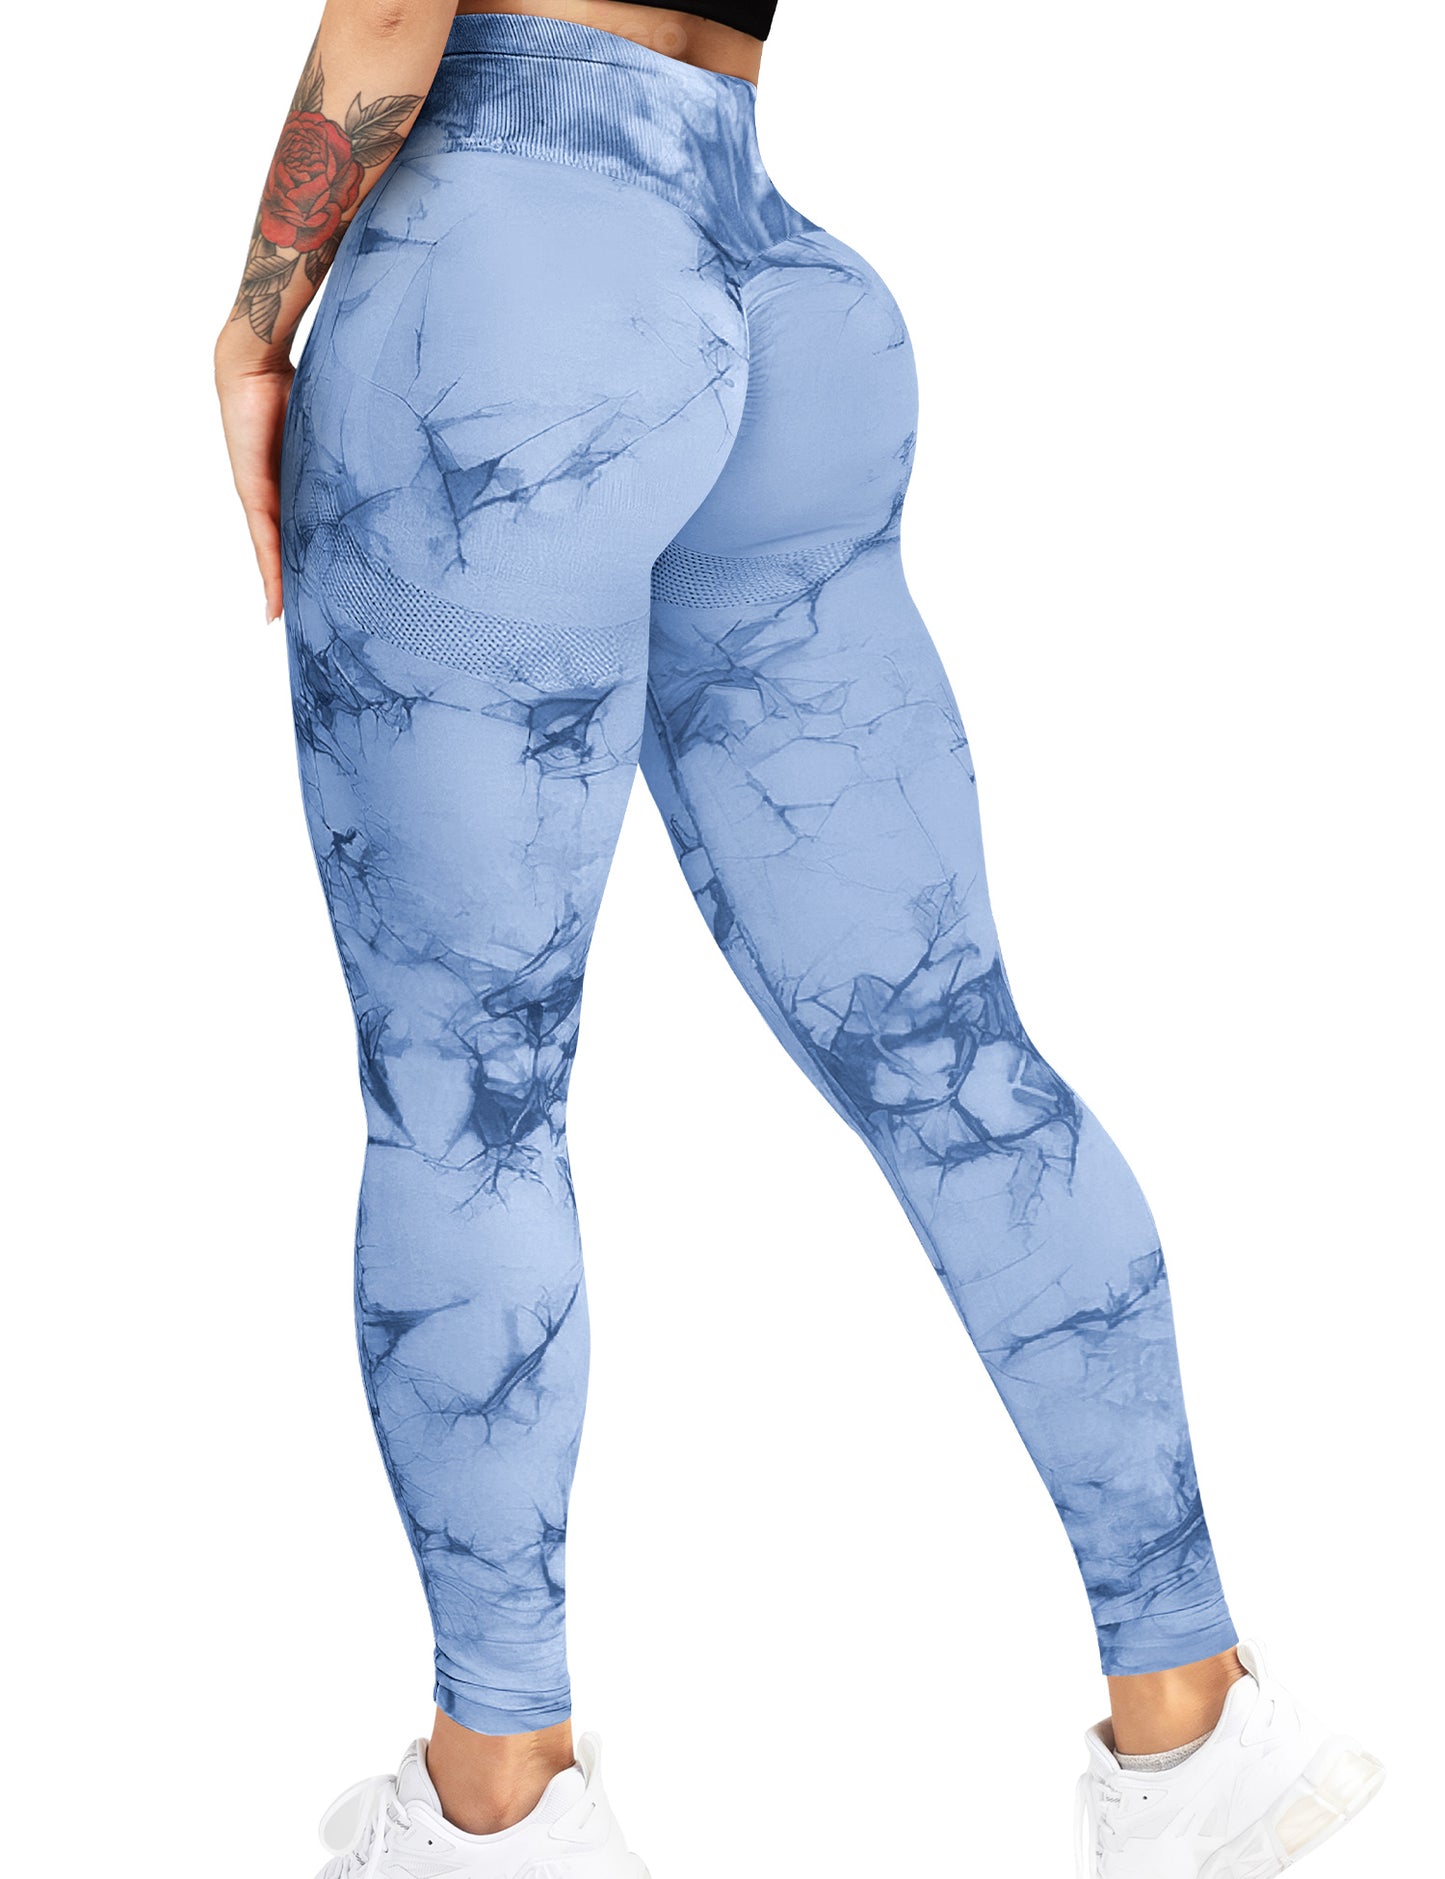 HIGORUN Tie Dye Workouts Seamless Leggings for Women High Waist Gym Leggings Yoga Pants Blue